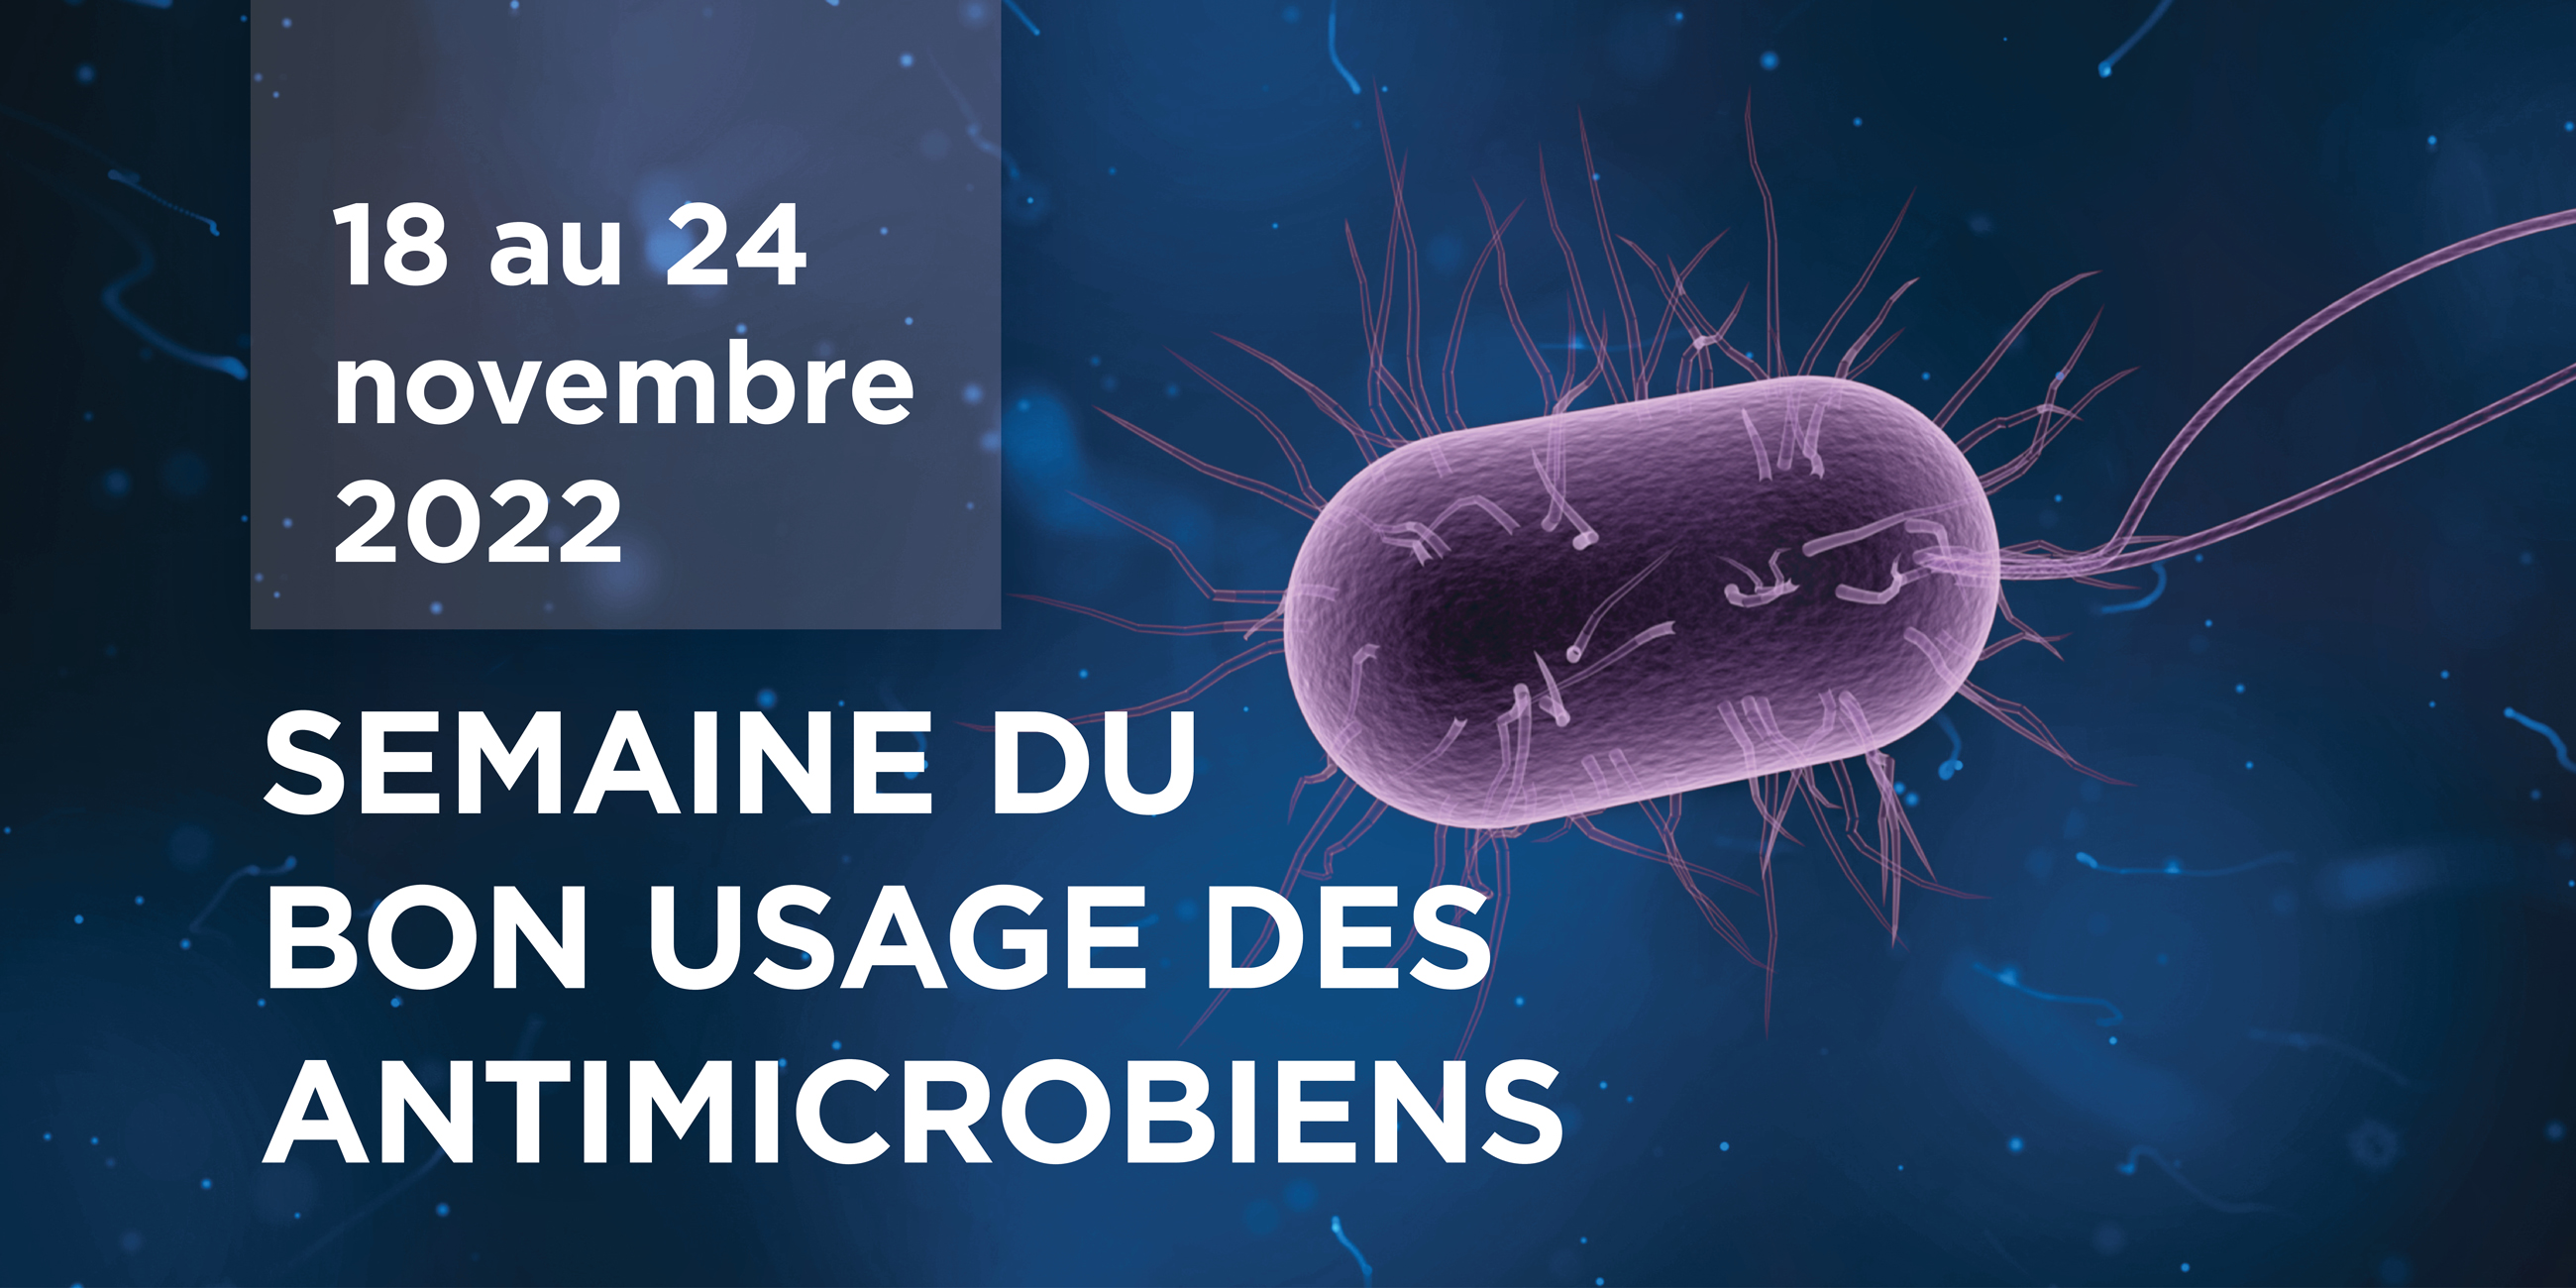 Semaine du bon usage des antimicrobiens du 18 au 24 novembre 2022